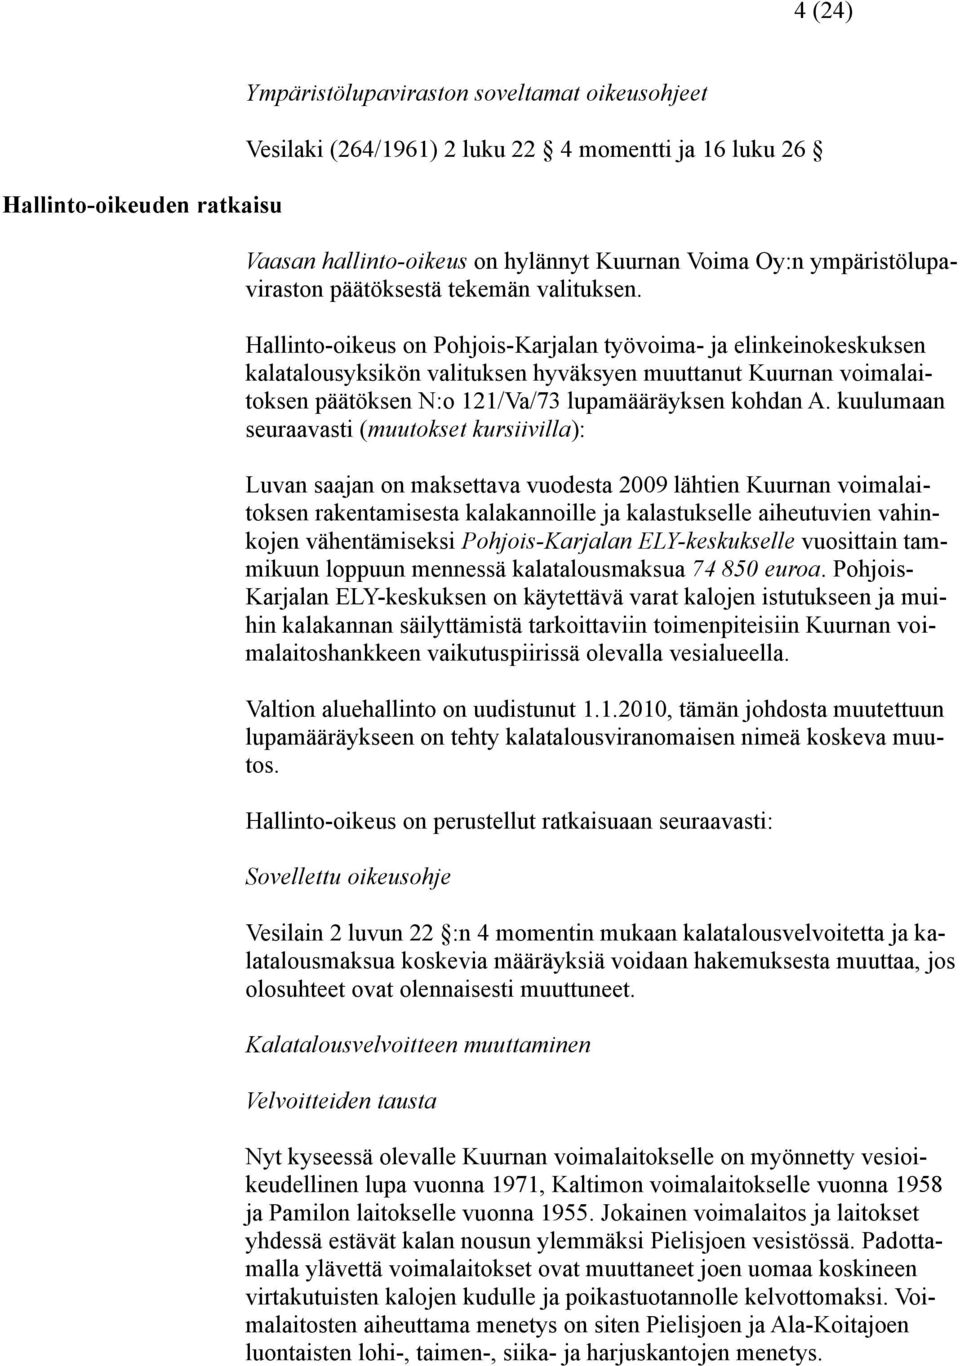 Hallinto-oikeus on Pohjois-Karjalan työvoima- ja elinkeinokeskuksen kalatalousyksikön valituksen hyväksyen muuttanut Kuurnan voimalaitoksen päätöksen N:o 121/Va/73 lupamääräyksen kohdan A.